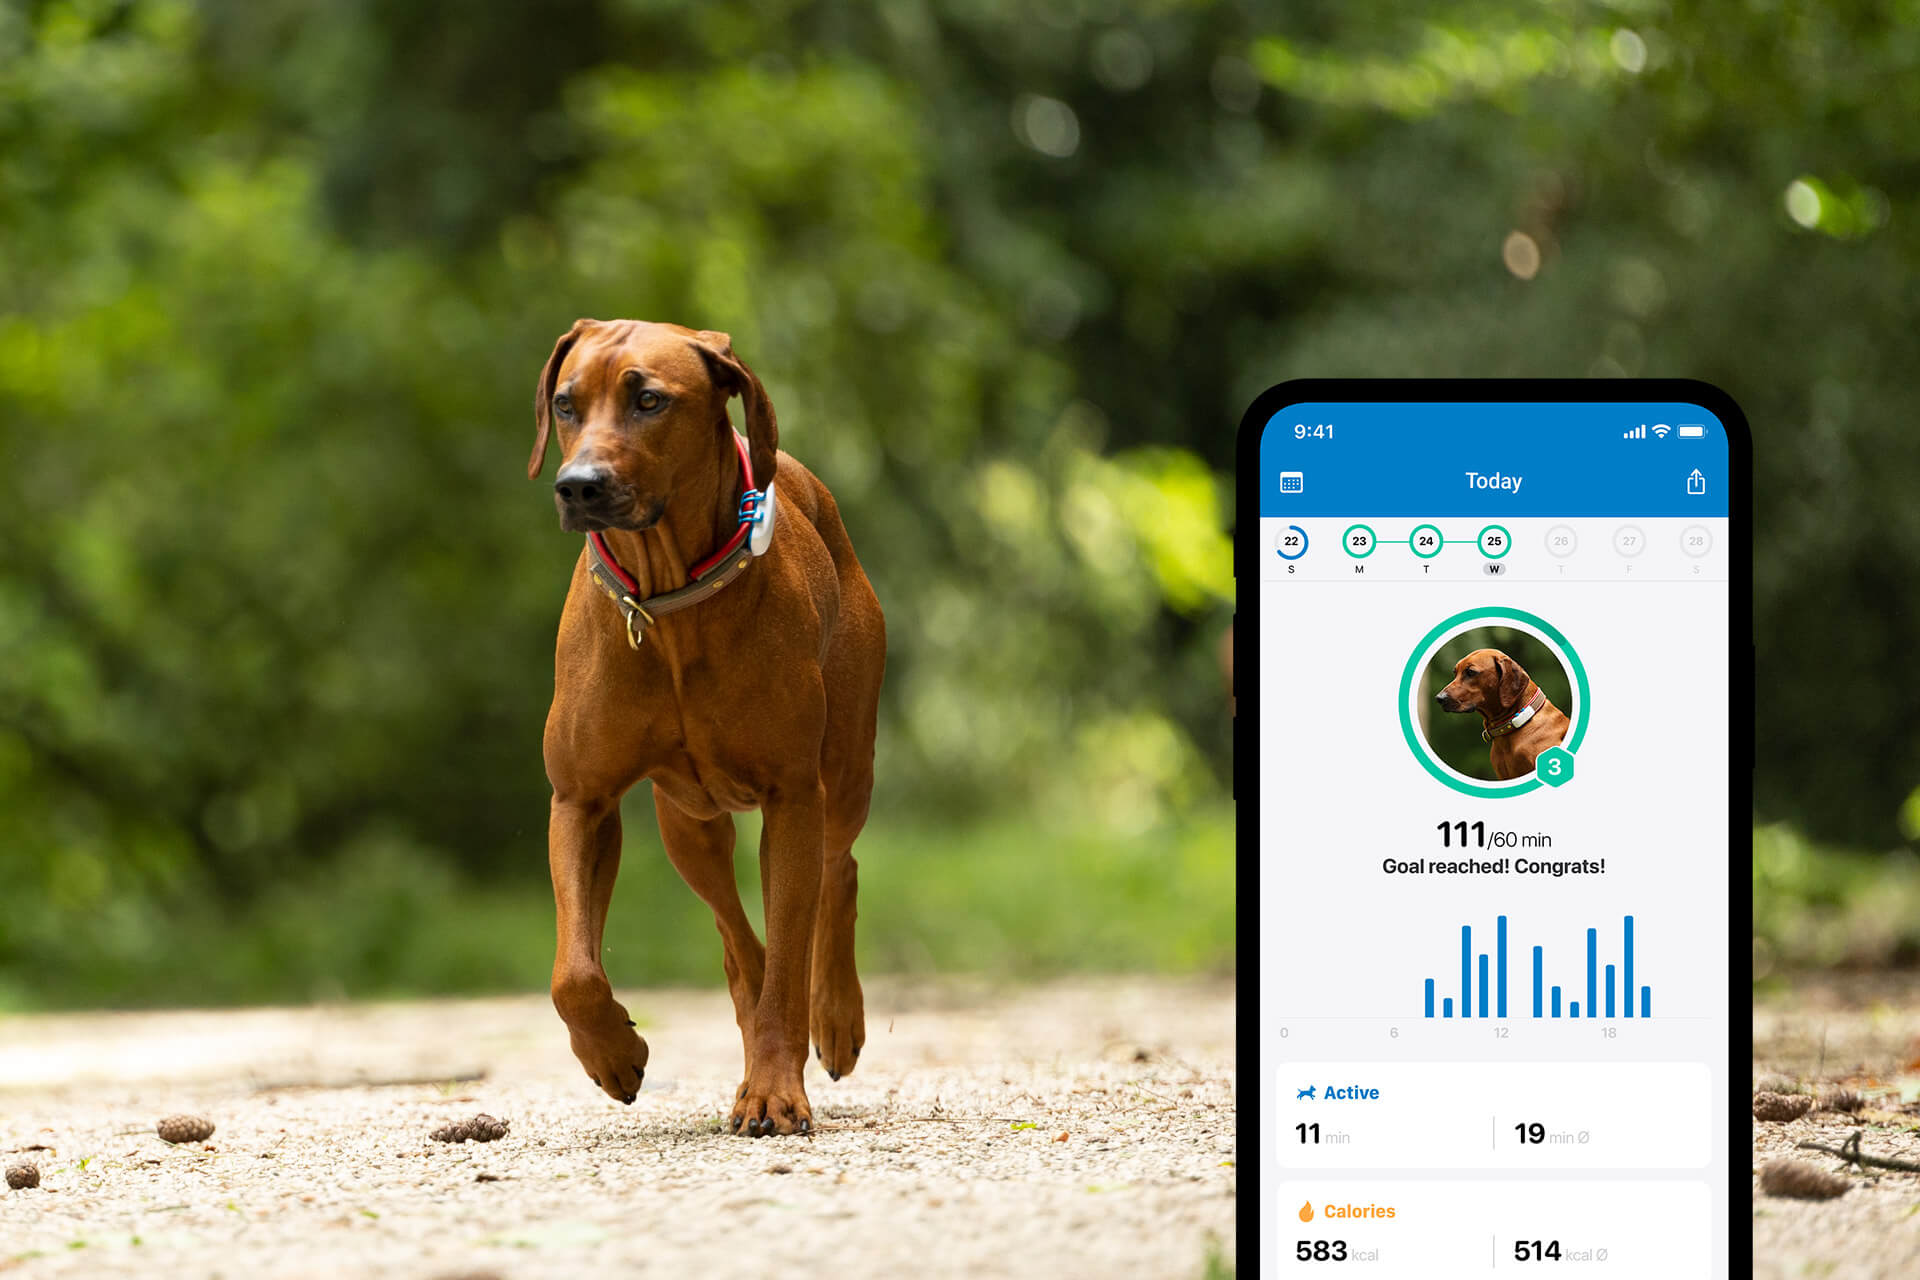 Brauner kurzhaariger Hund läuft einen Weg entlang, daneben App-Screen mit geöffnetem Aktivitätstracking